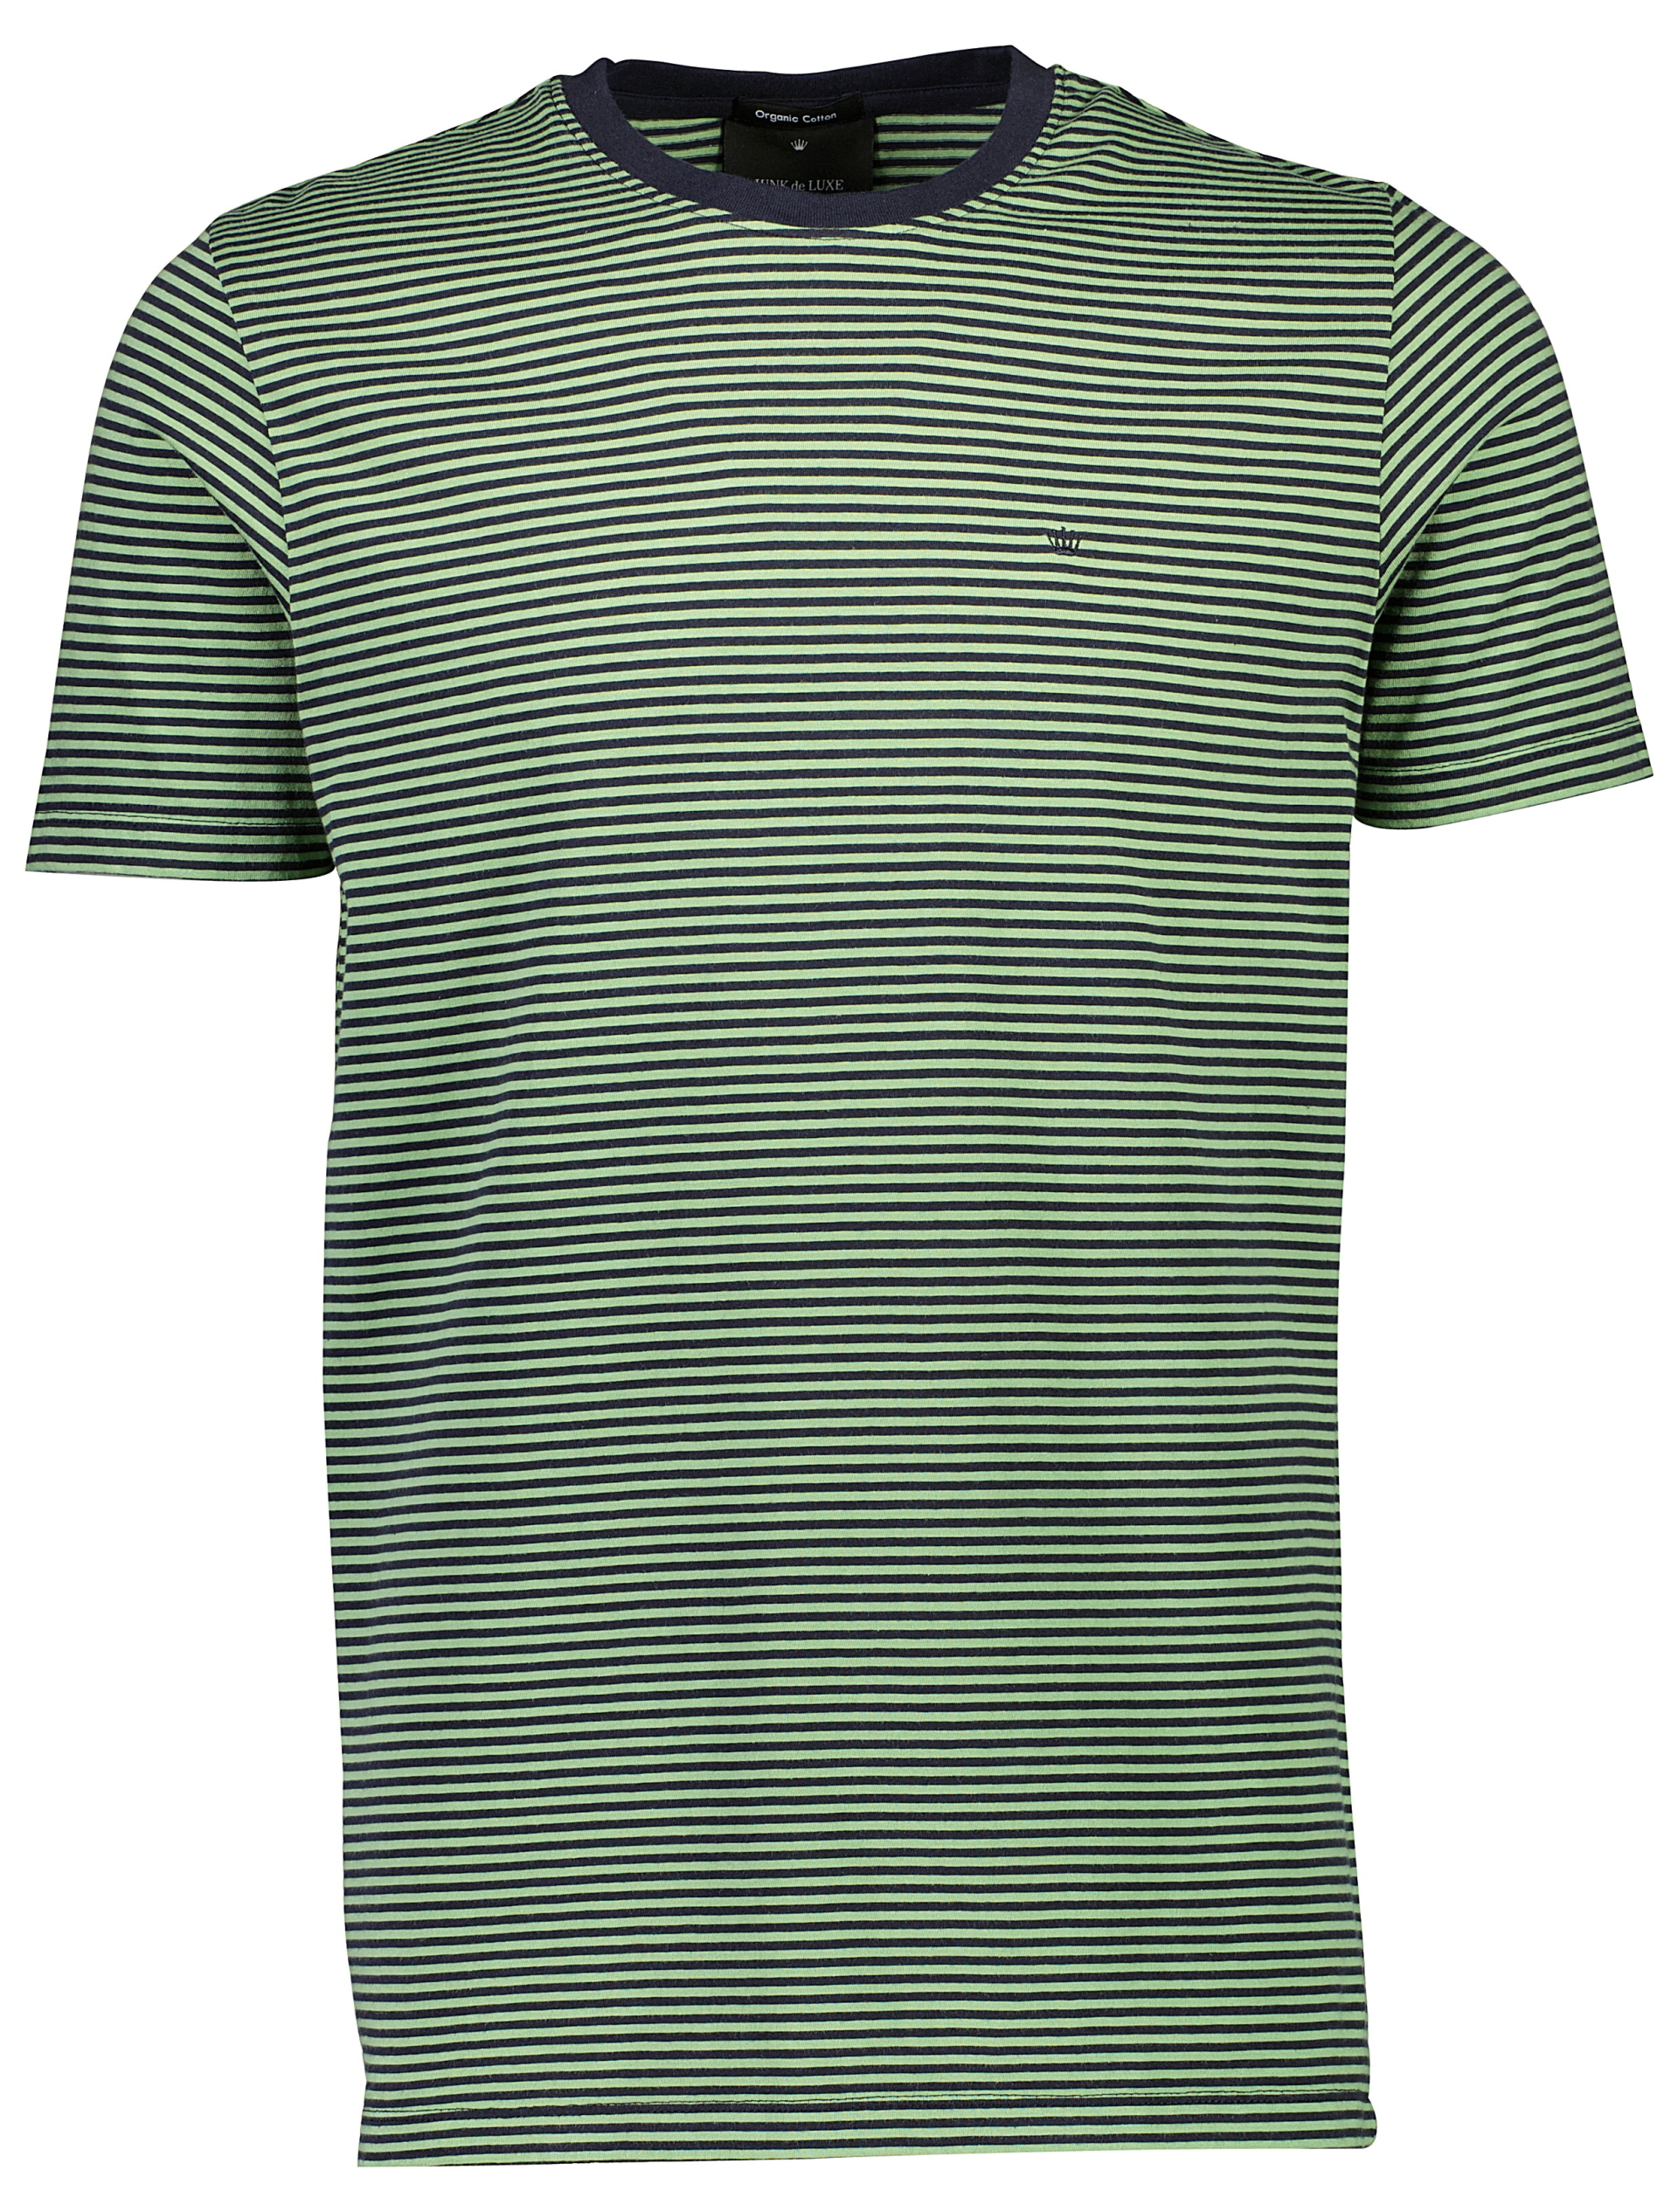 Junk de Luxe T-shirt grön / pastel green